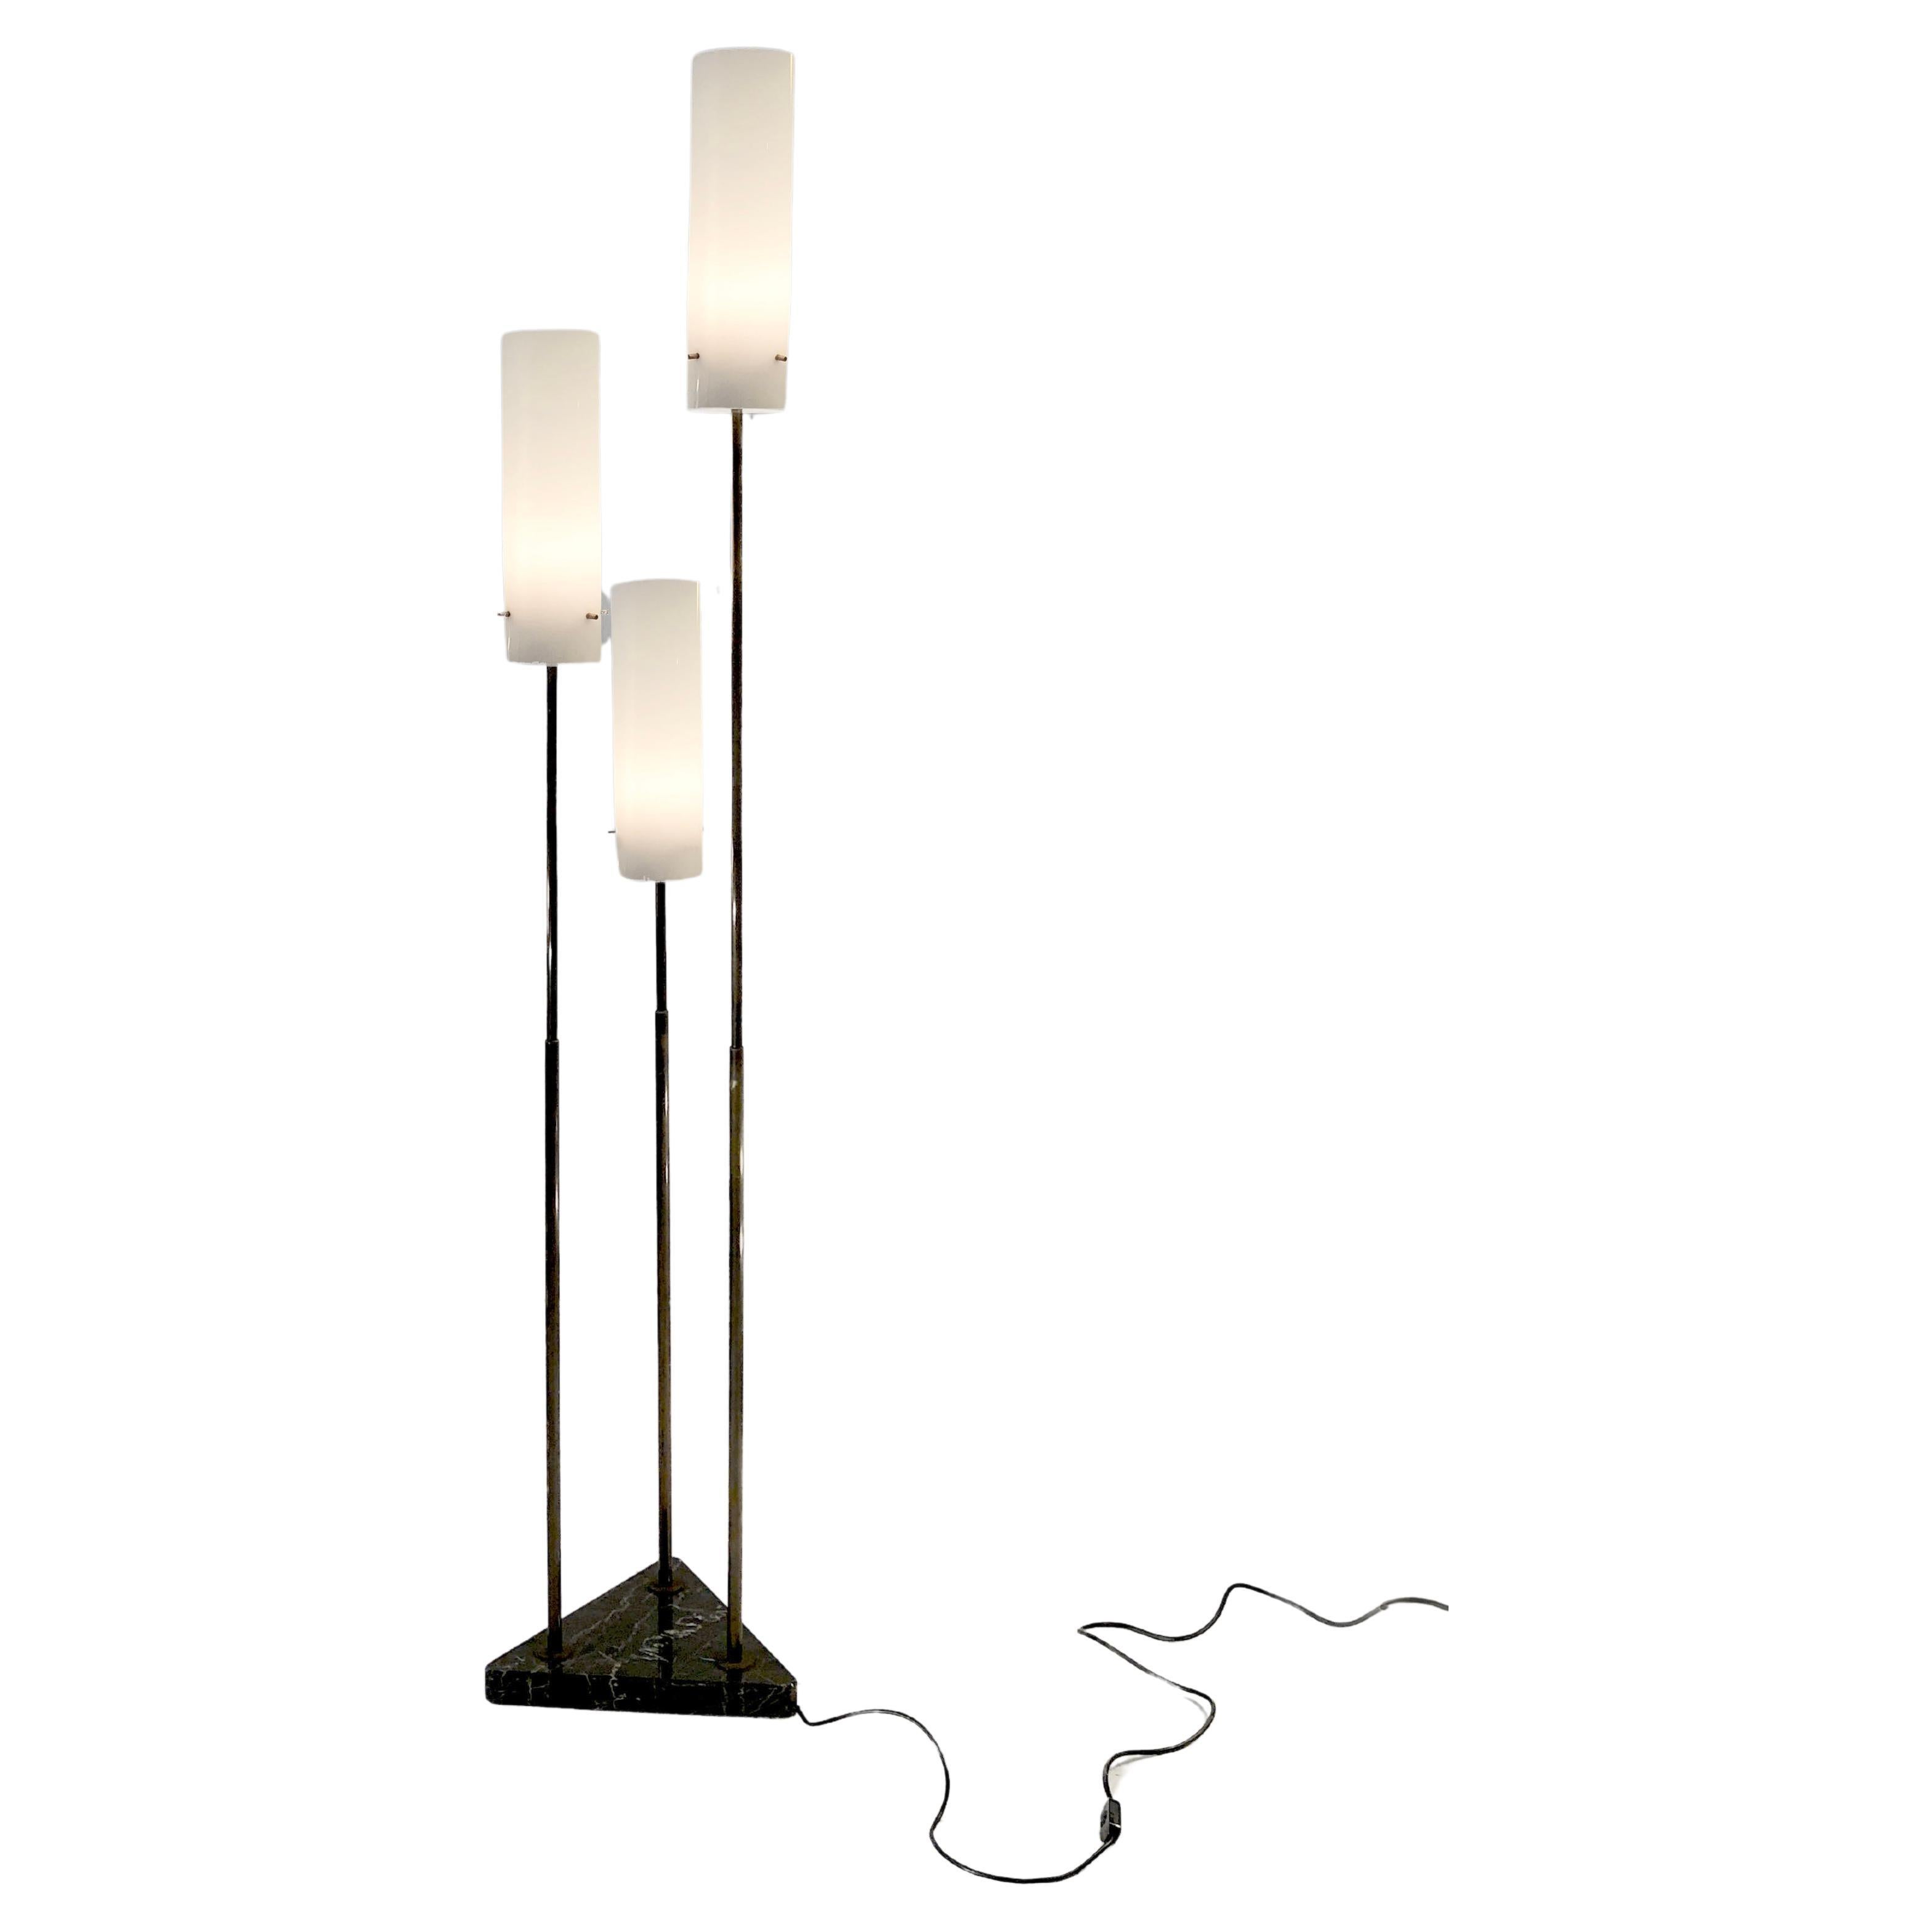 A MID-CENTURY-MODERN FLOOR LAMP im Stil von TITO AGNOLI & OLUCE, Italien 1950 im Angebot